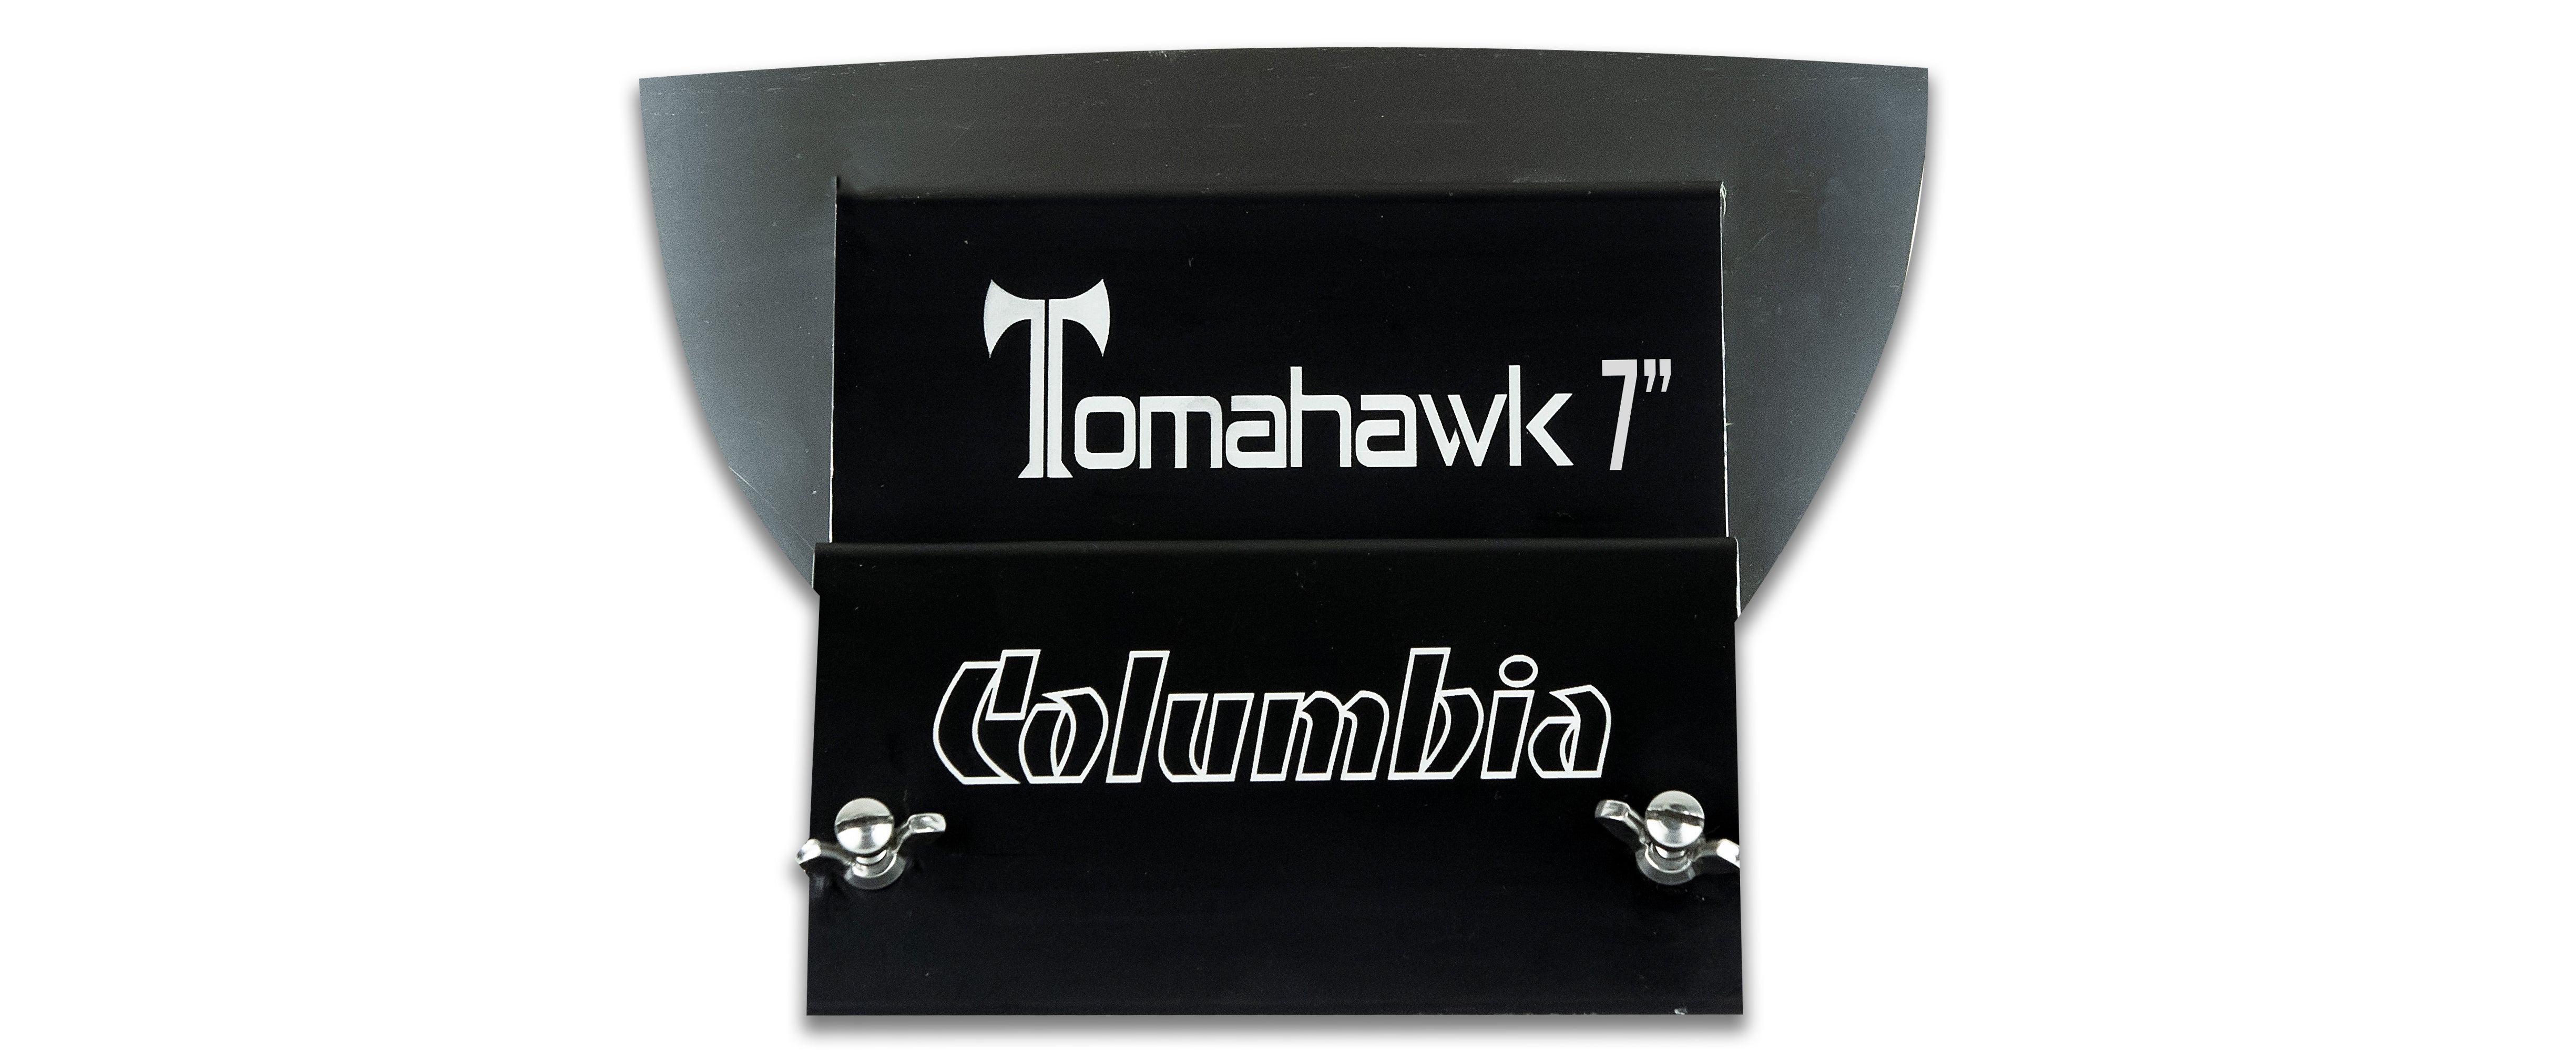 Ensemble de guerrier Columbia Tomahawk